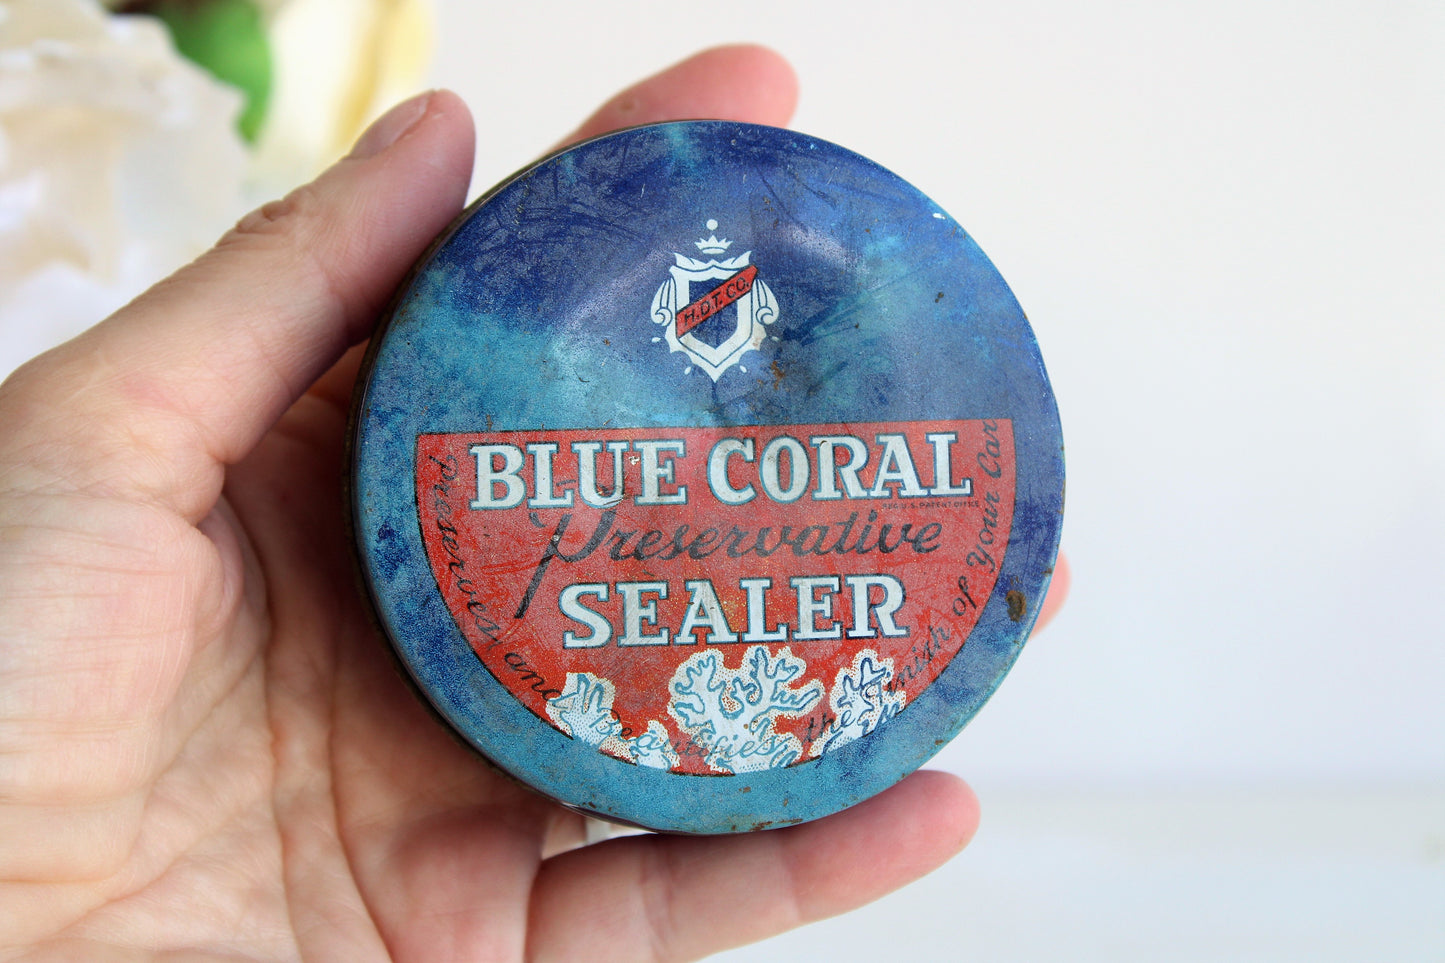 Vintage 1950s Cobalt Blue Glass Jar of Blue Coral Sealer